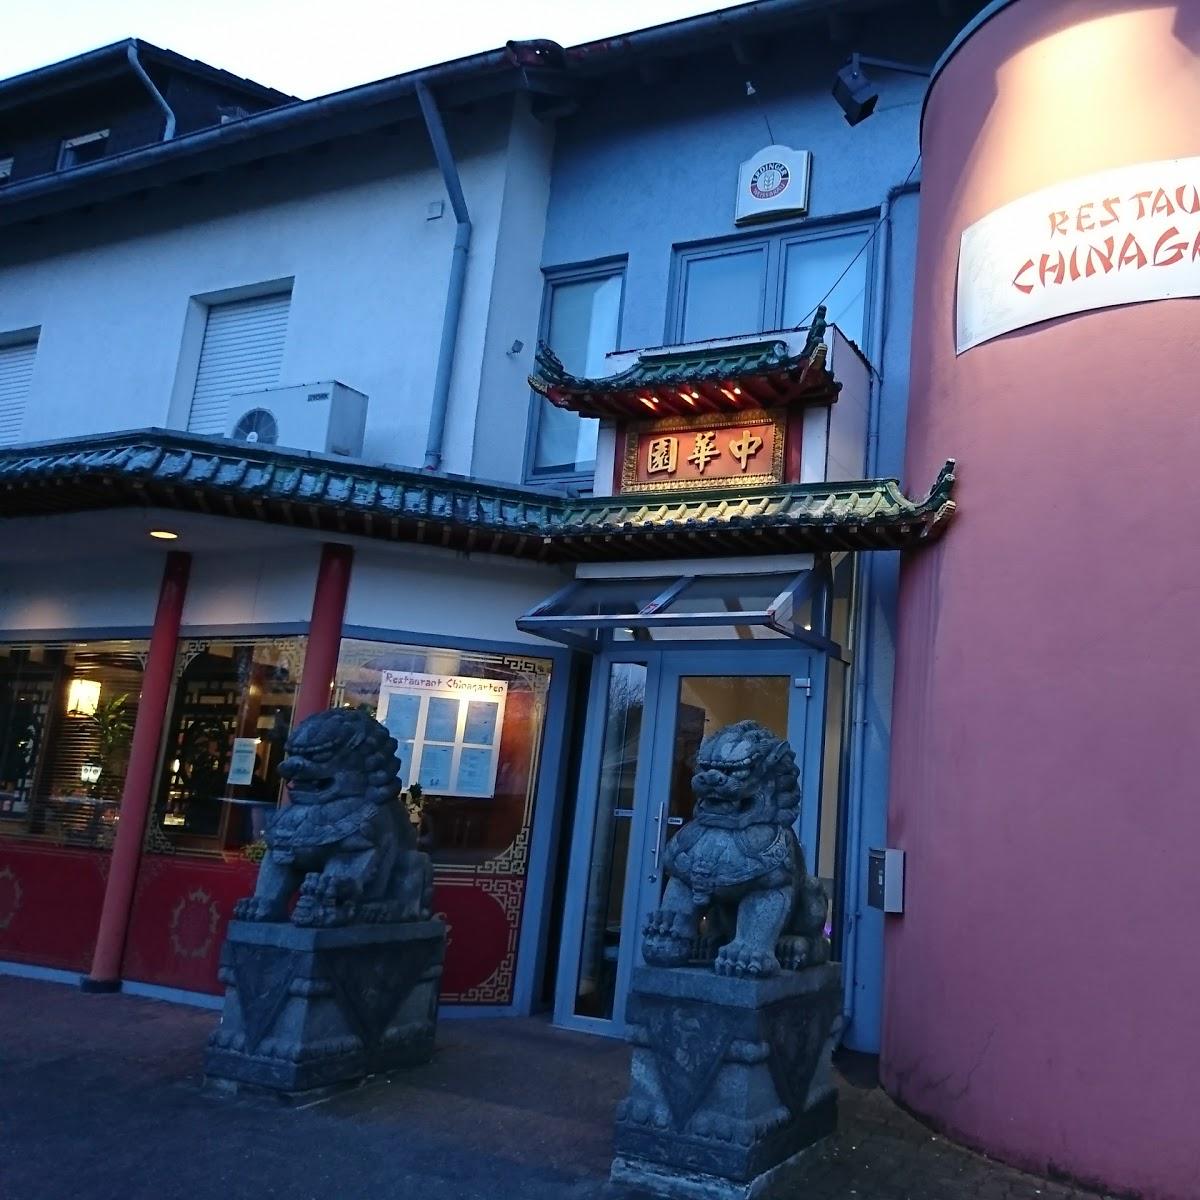 Restaurant "Restaurant Chinagarten" in Bielefeld